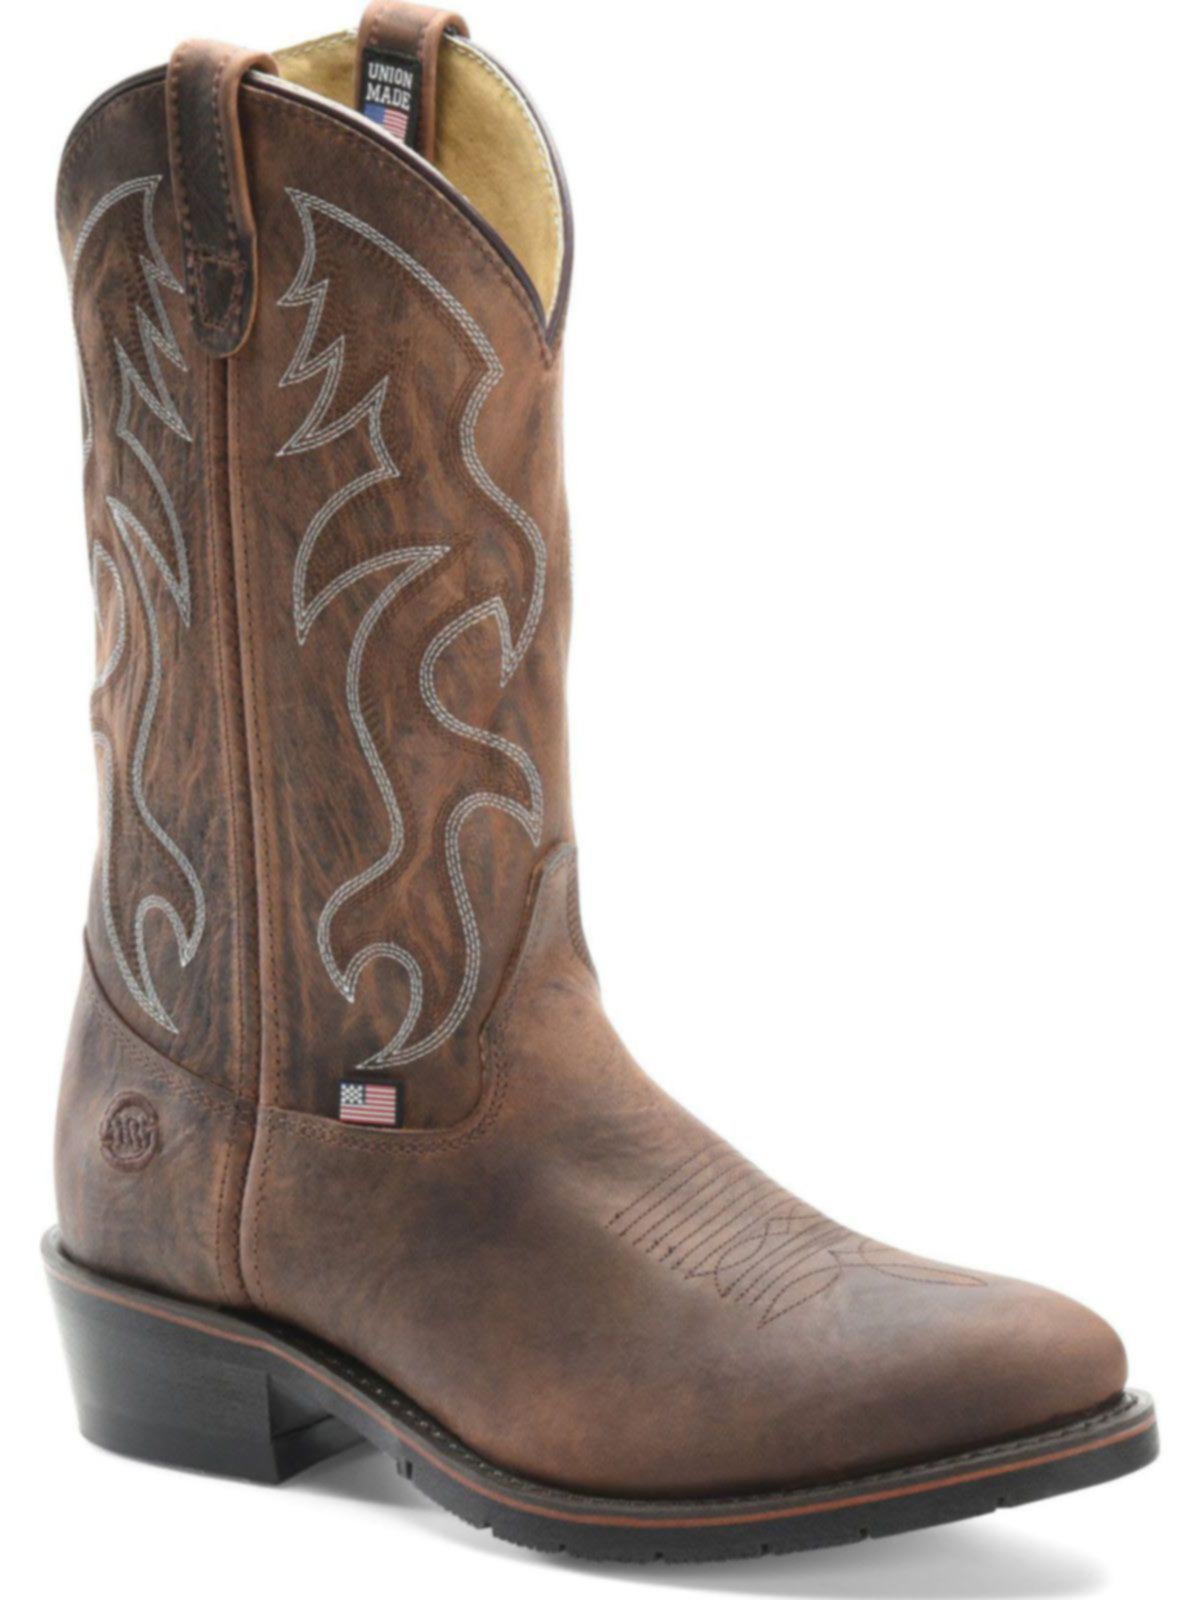 eee width cowboy boots